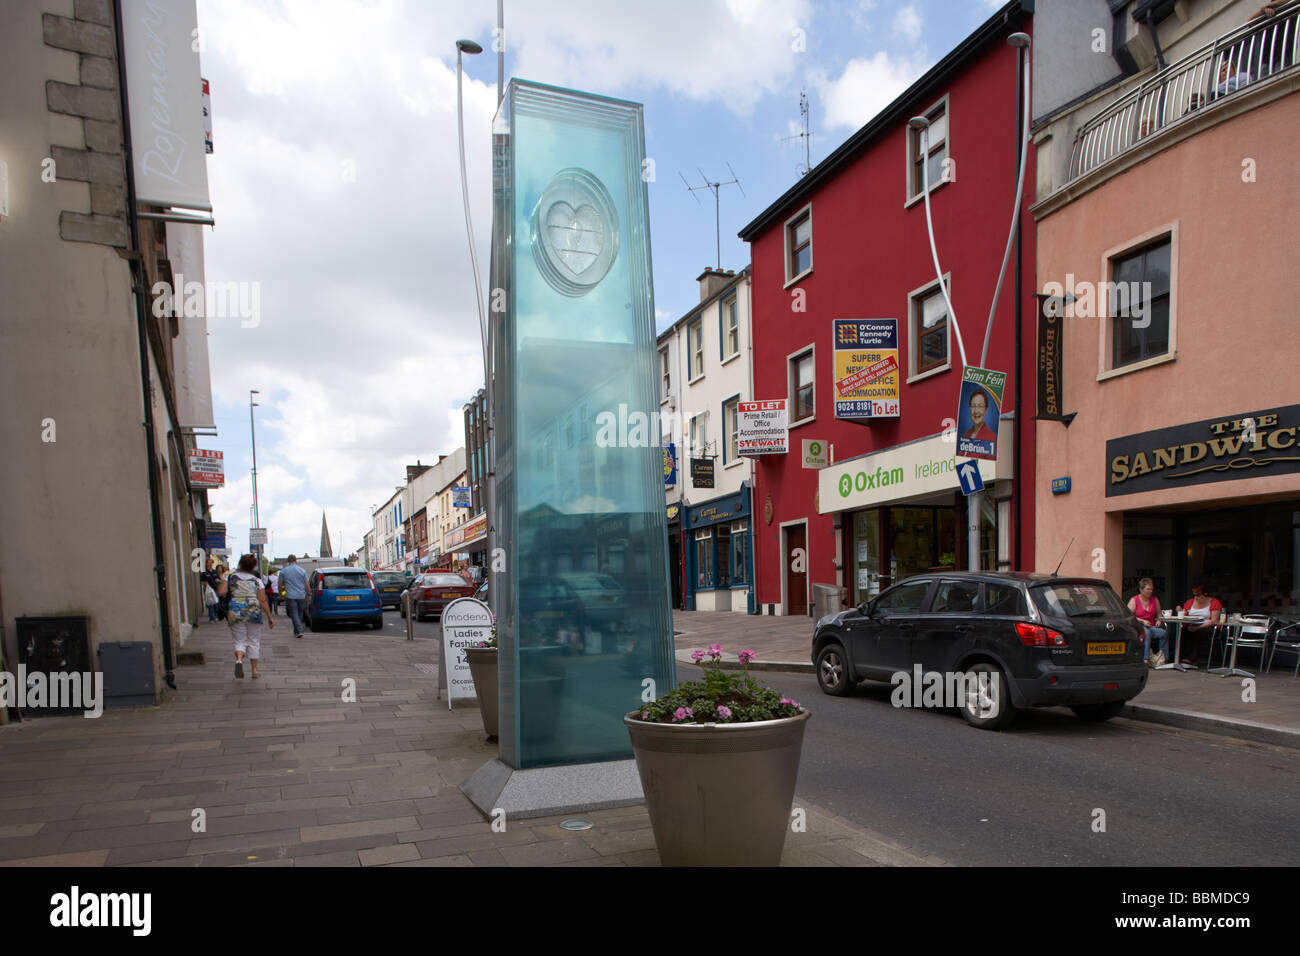 Denkmal auf dem Gelände der Explosion von Omagh Bombe Omagh Grafschaft Tyrone Nordirland Vereinigtes Königreich Stockfoto